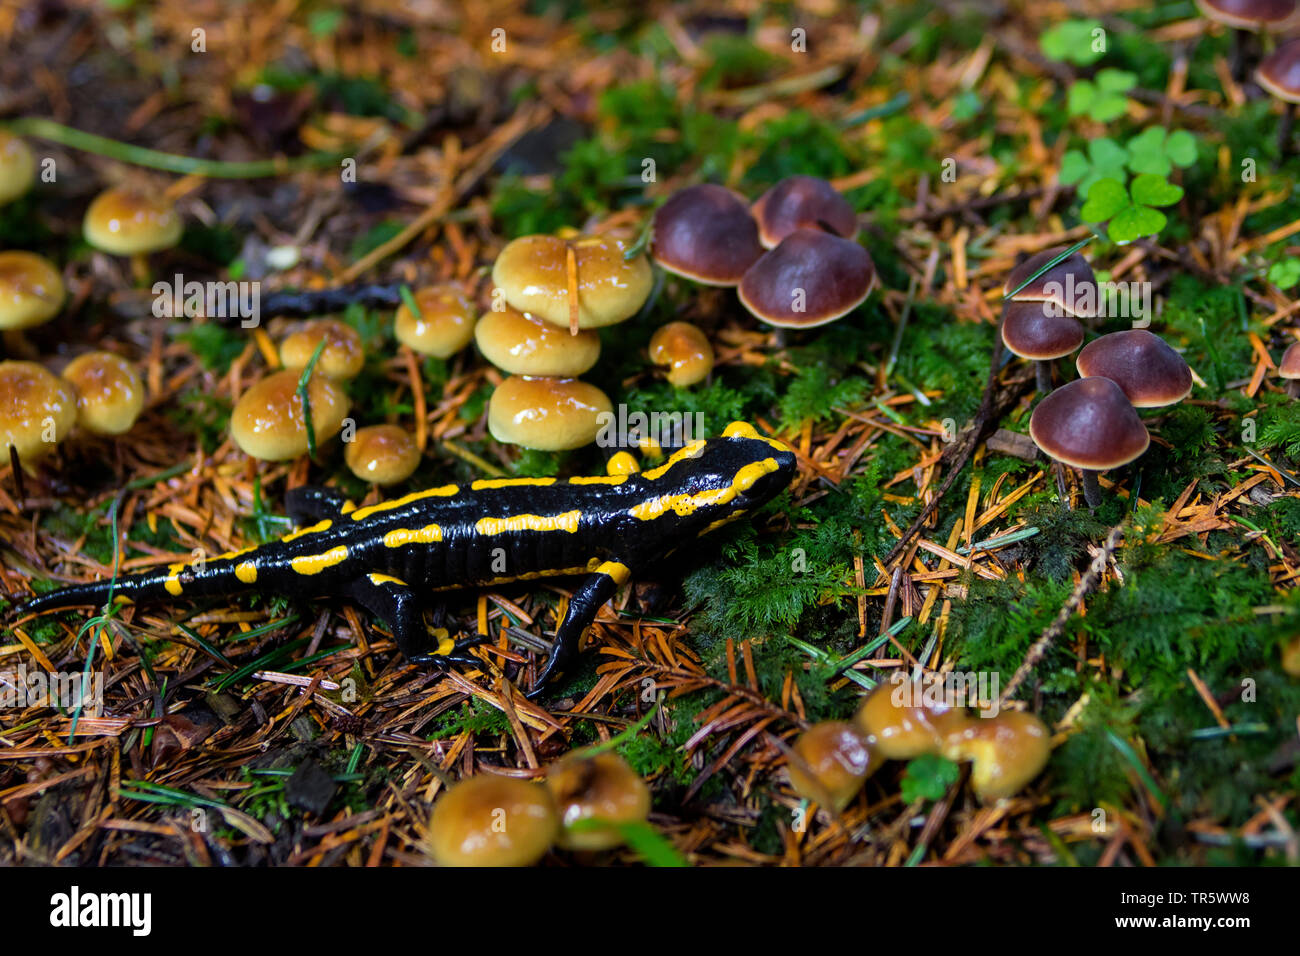 Salamandre terrestre européen (Salamandra salamandra), dans une forêt à la recherche de nourriture chez les champignons, Suisse, Sankt Gallen Banque D'Images